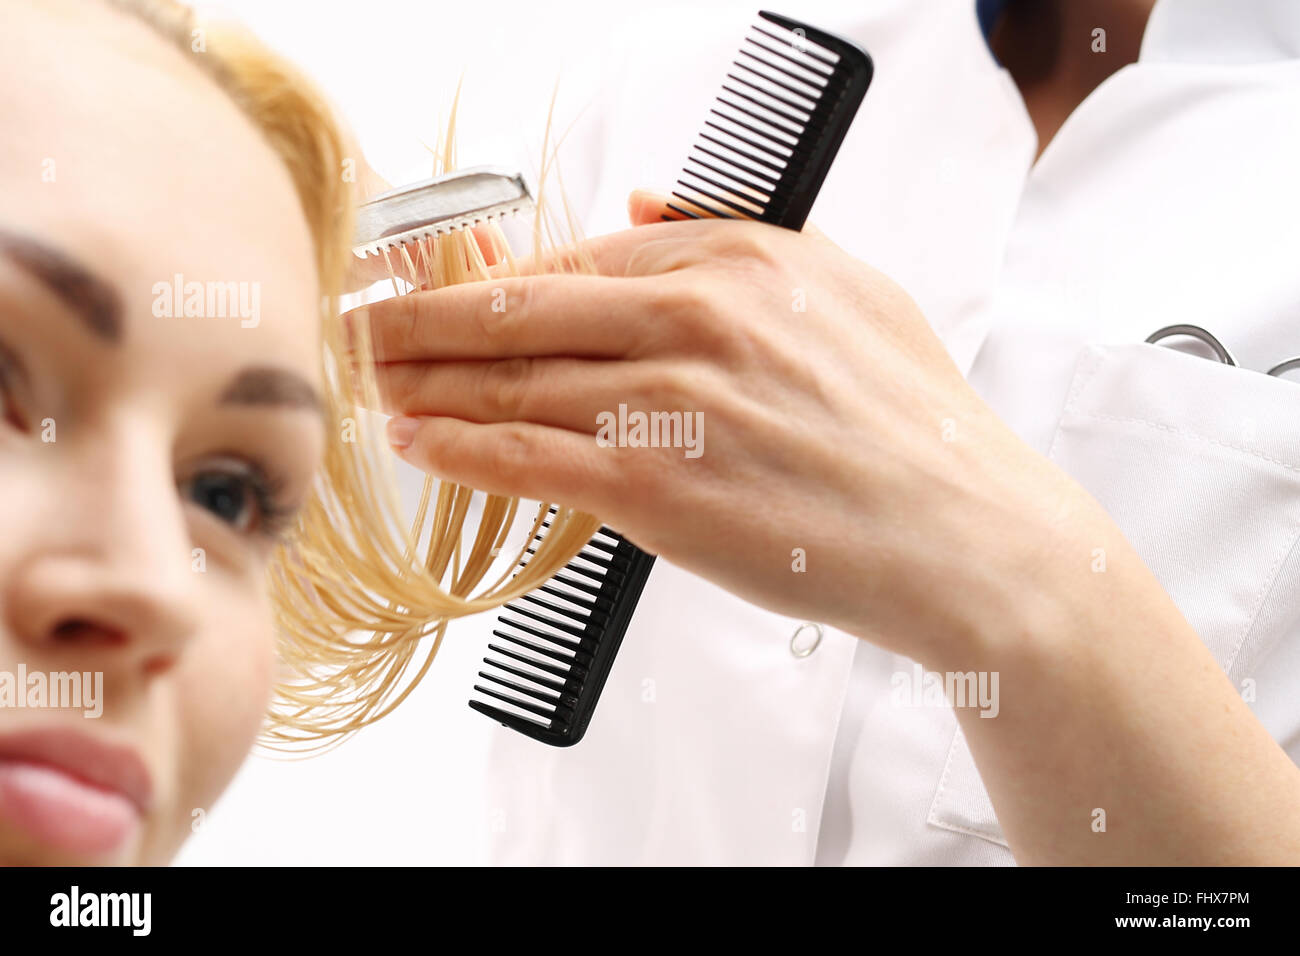 Haarschnitt chinesische Messer. Chinesische Messer. Beim Friseur Haare  schneiden mit einem Rasiermesser Stockfotografie - Alamy